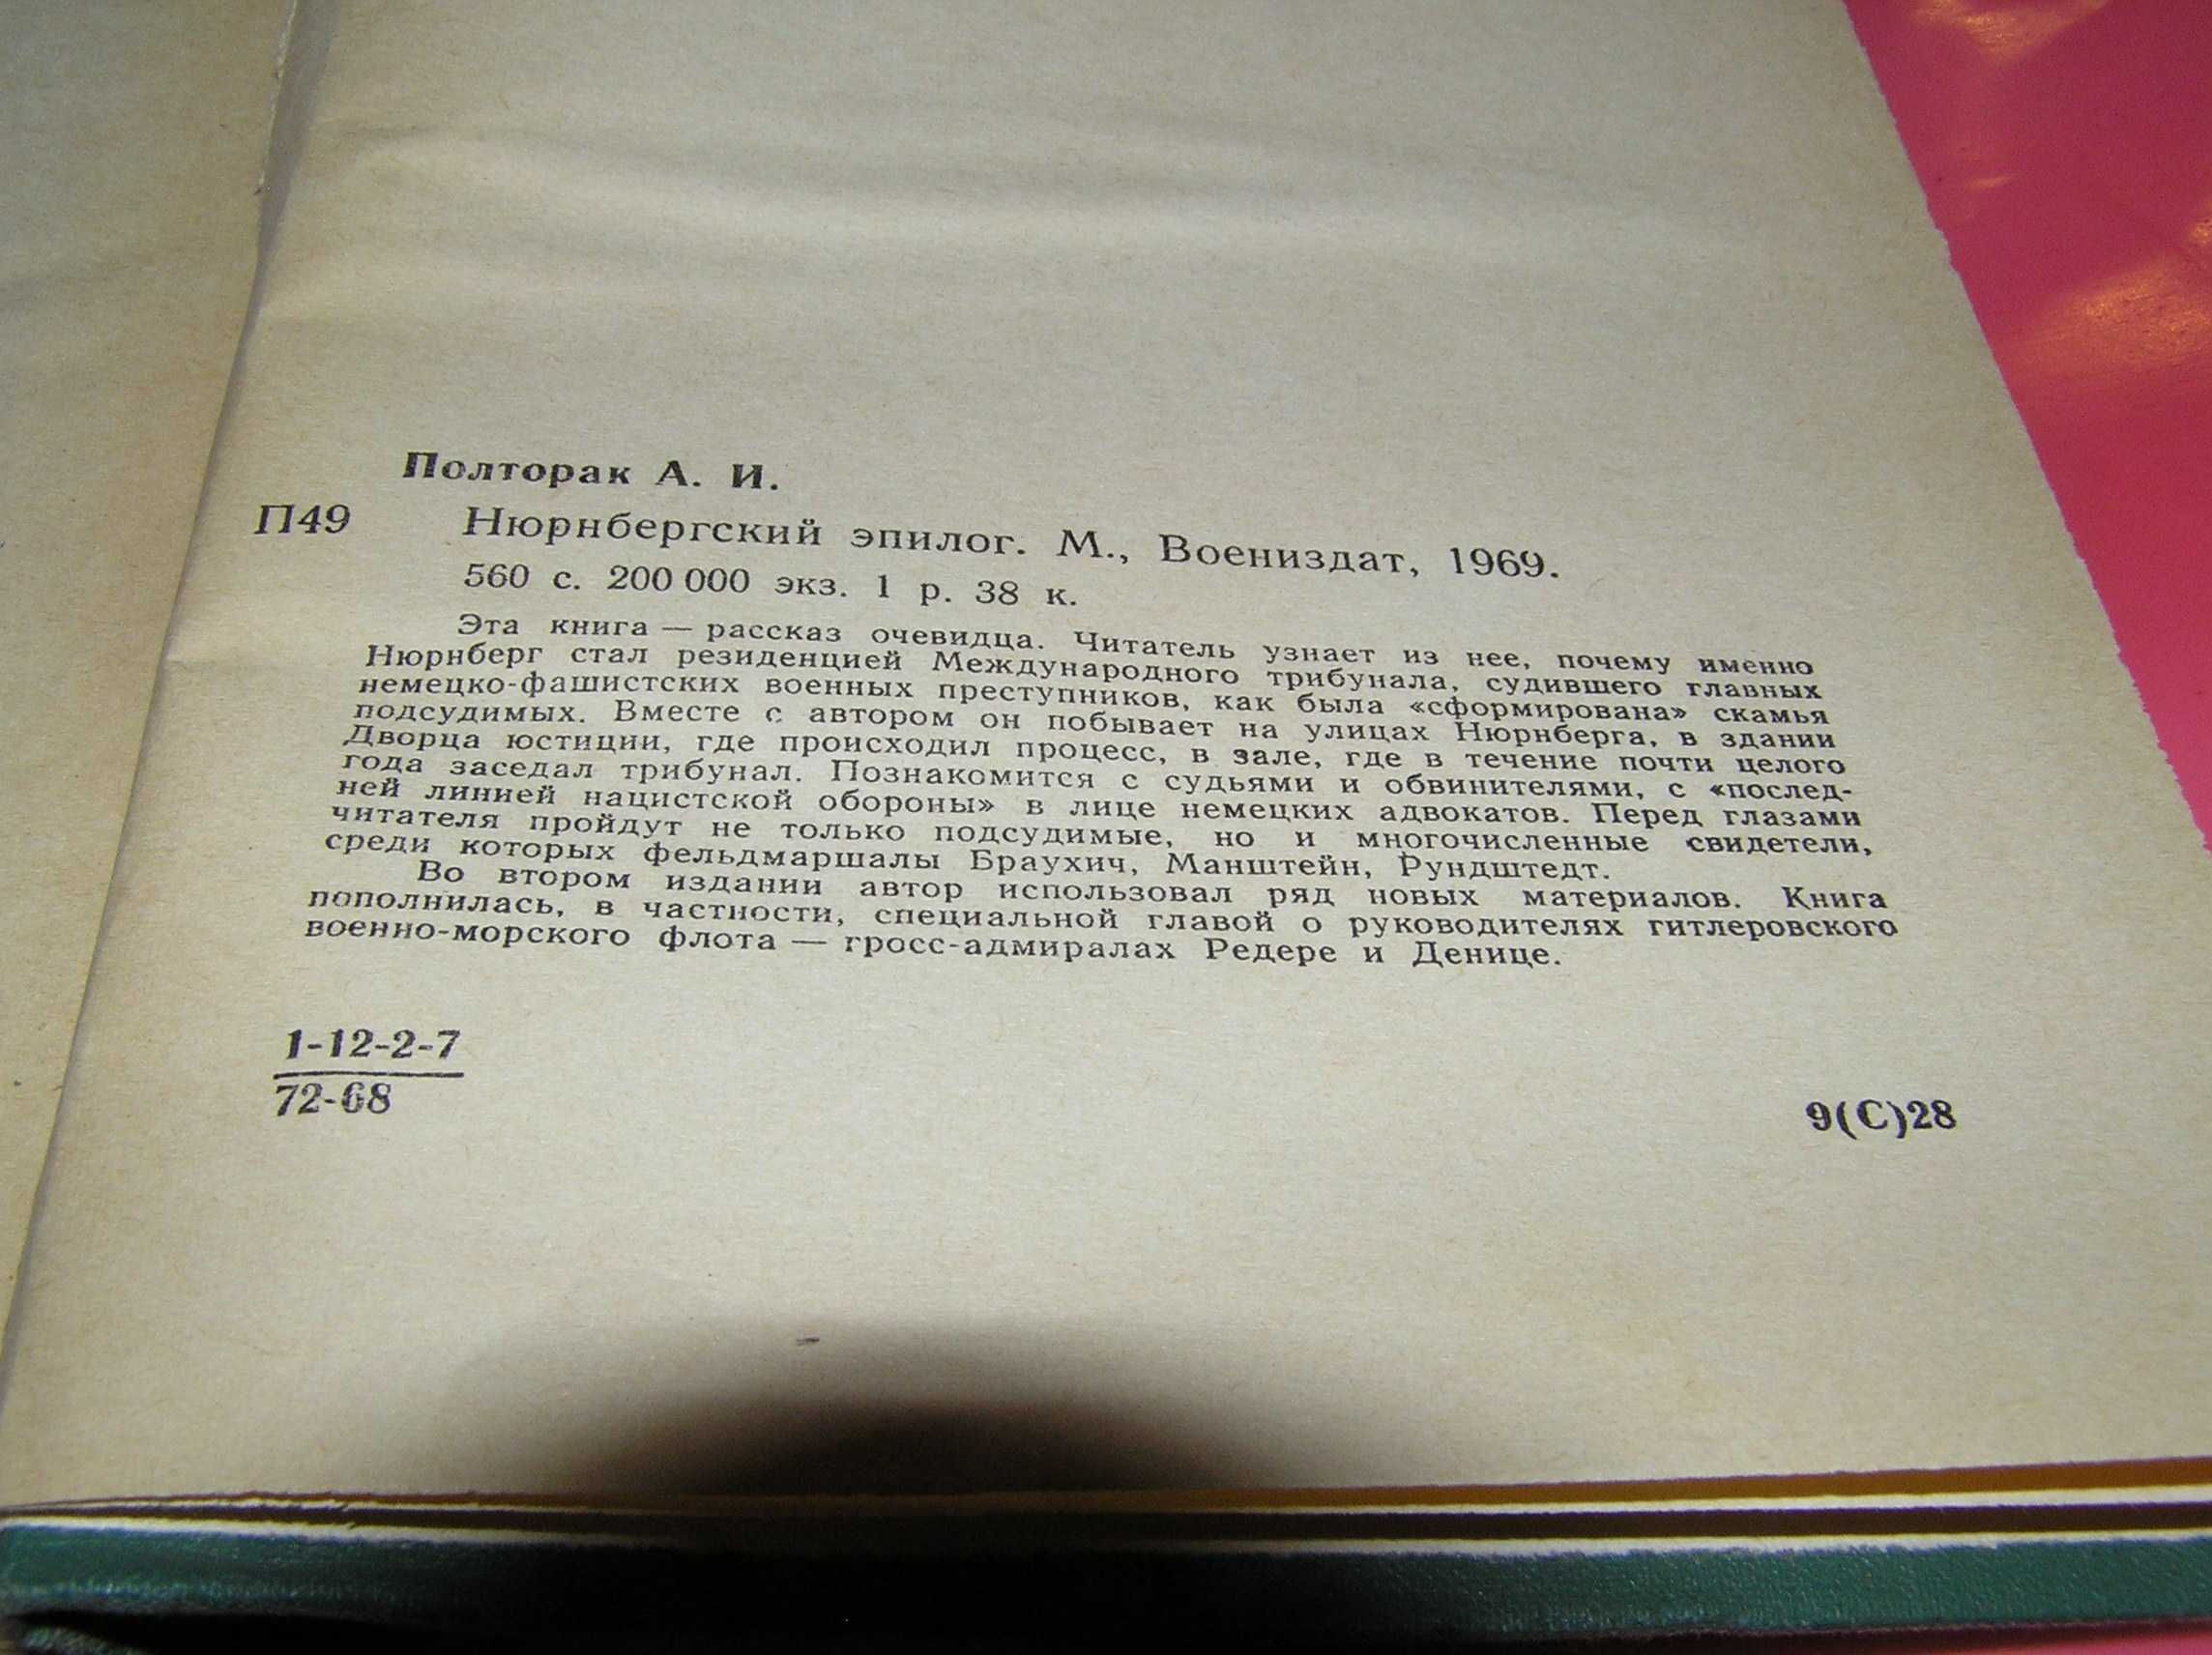 Полторак А.И. Нюрнбергский эпилог. 1969г.